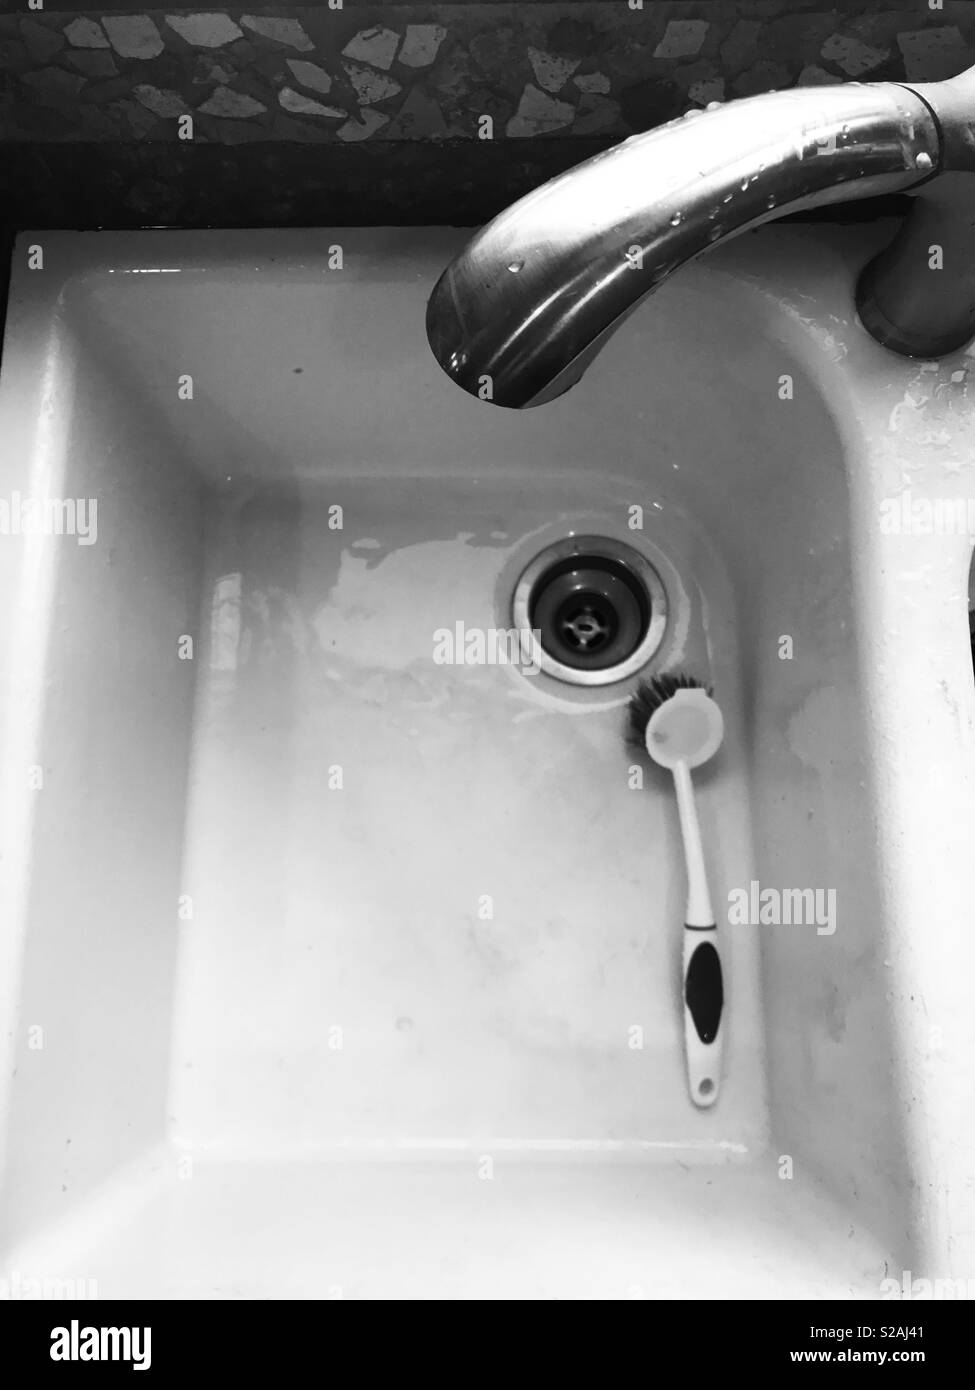 Foto in bianco e nero di una spazzola scrub all'interno del lavello da cucina Foto Stock